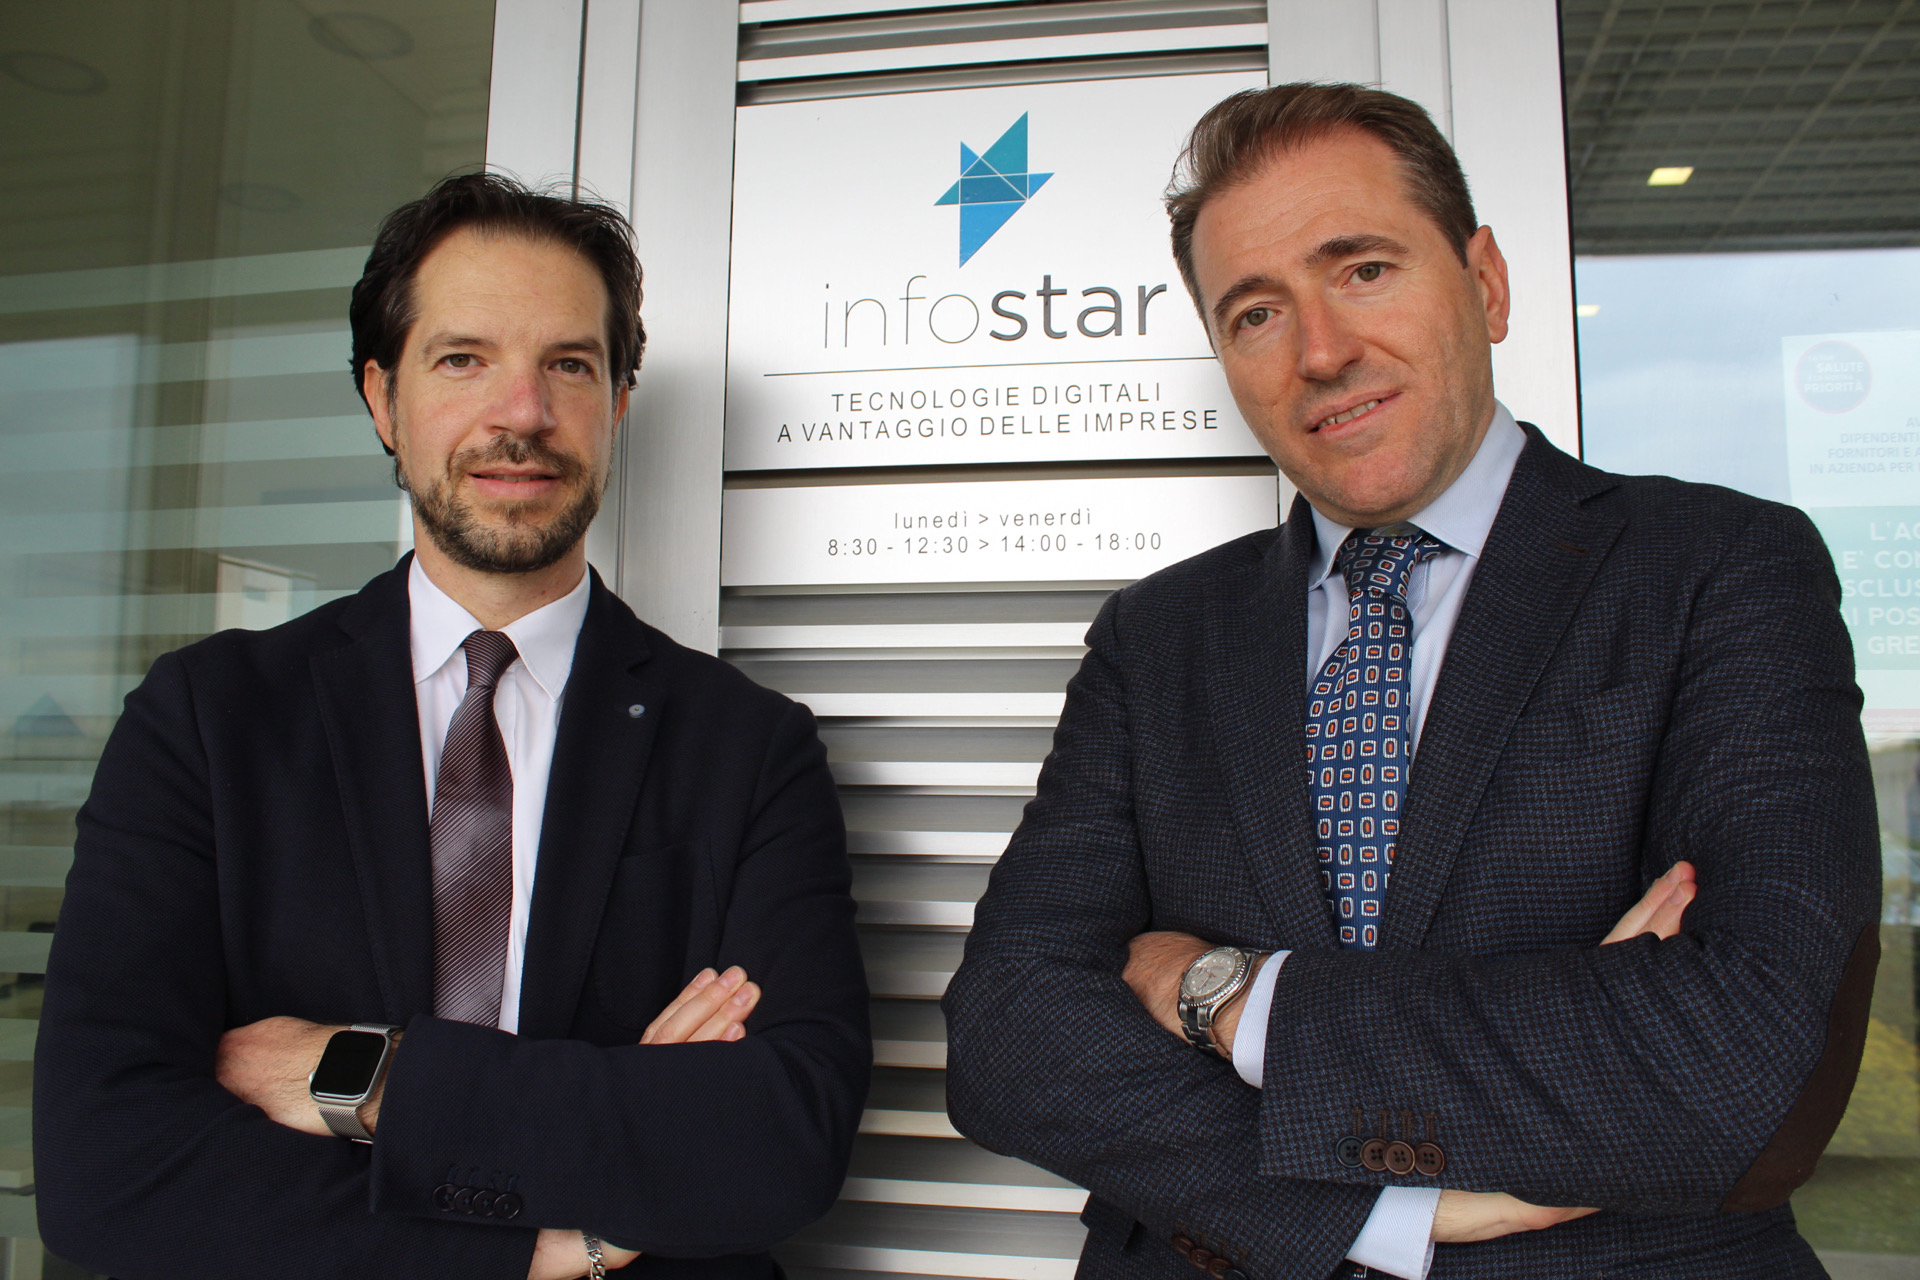 Da destra Cristian Feregotto, fondatore e Presidente di Infostar S.r.l. con Luca Noacco Vice Presidente.